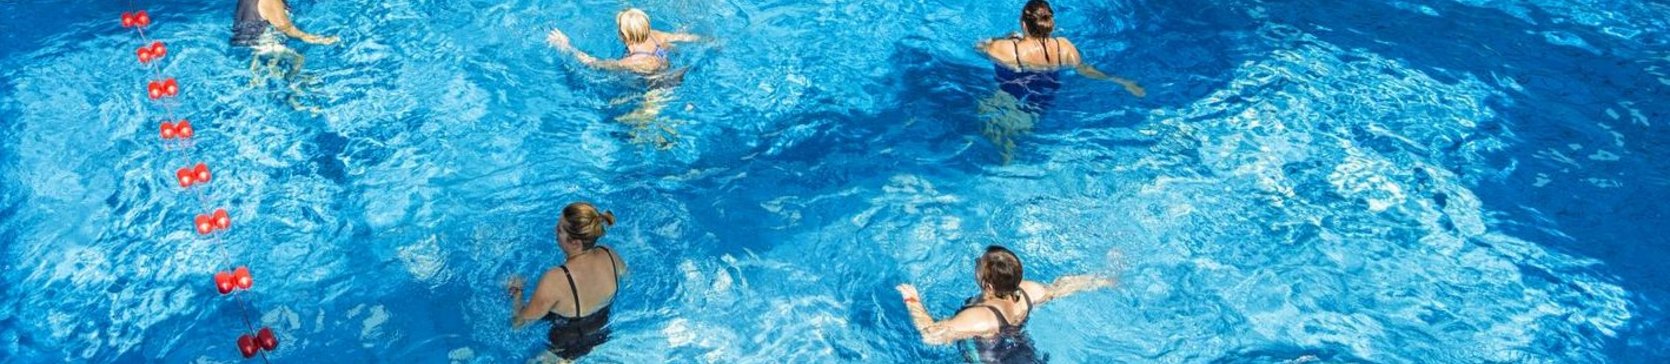 Wewnętrzny basen z falą - w głębszej części prowadzone są zajęcia aqua aerobiku.